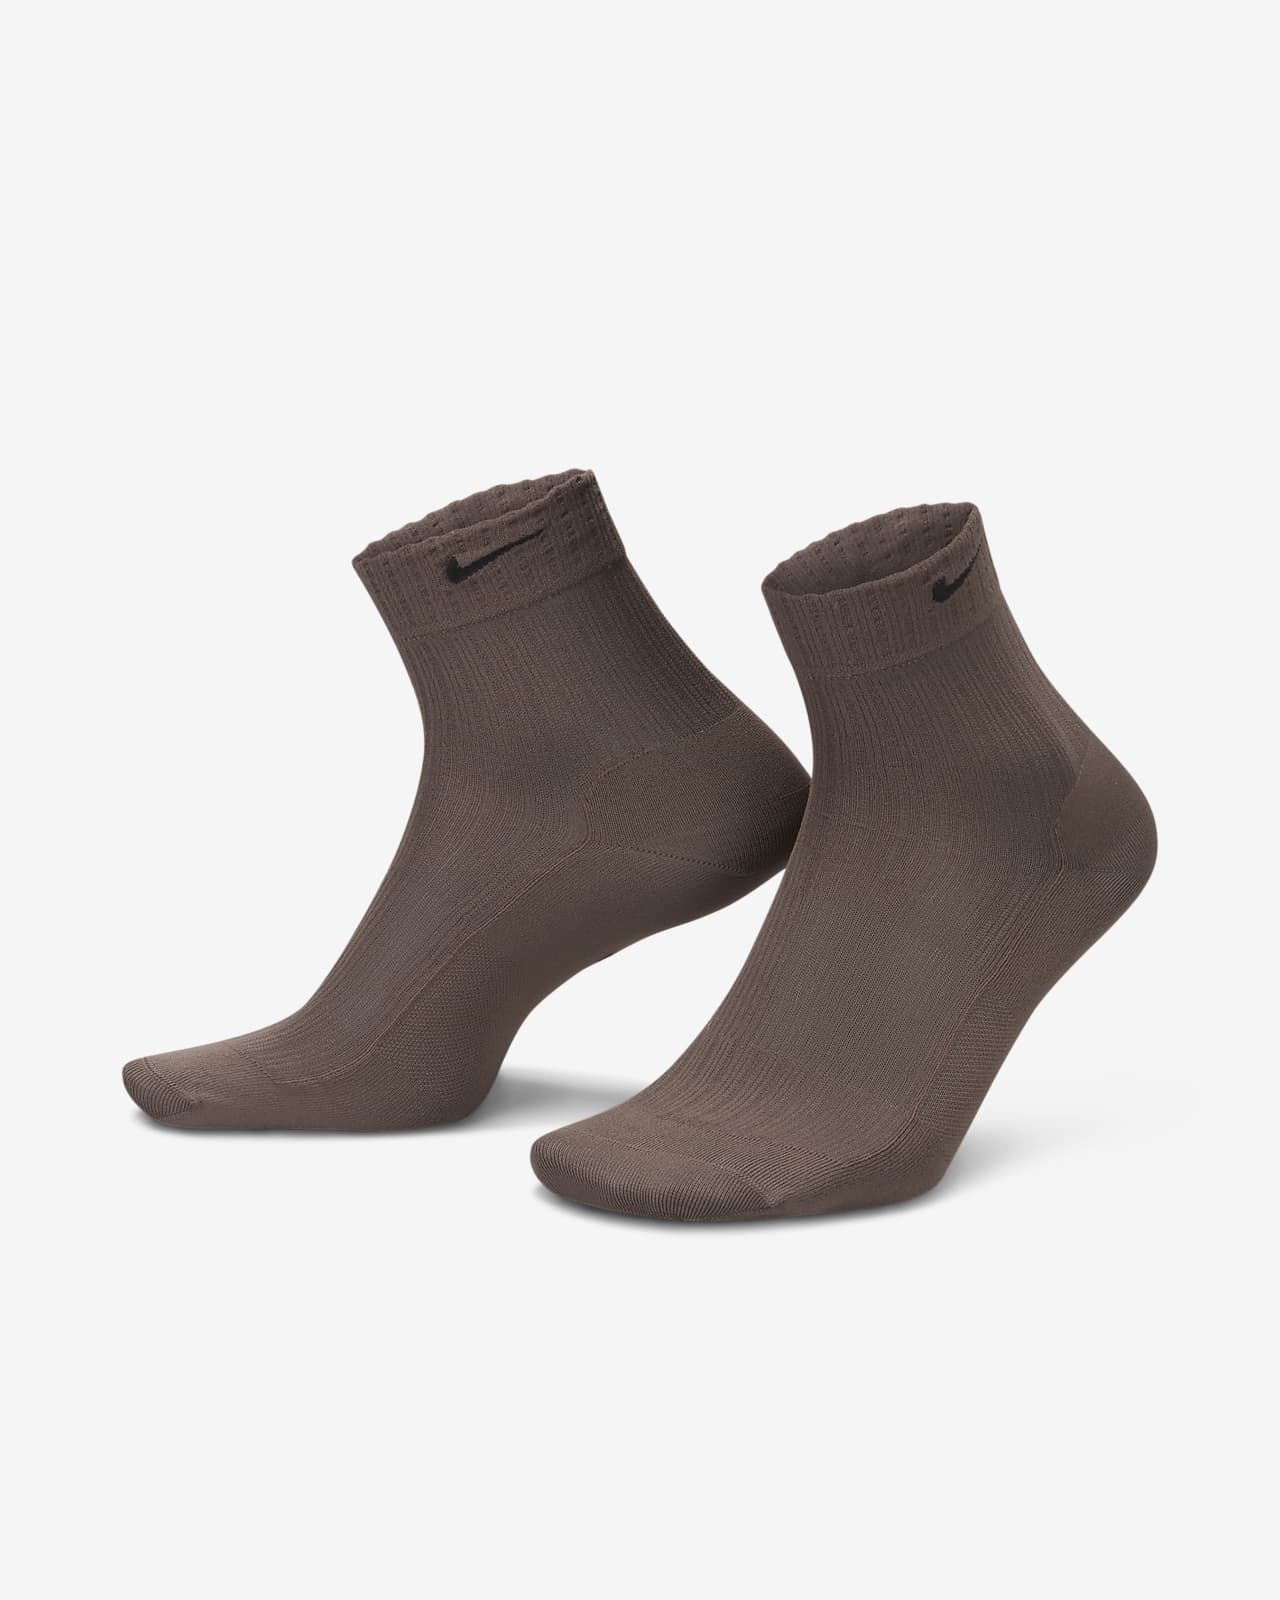 Nike İnce Kadın Bilek Çorapları (1 Çift)